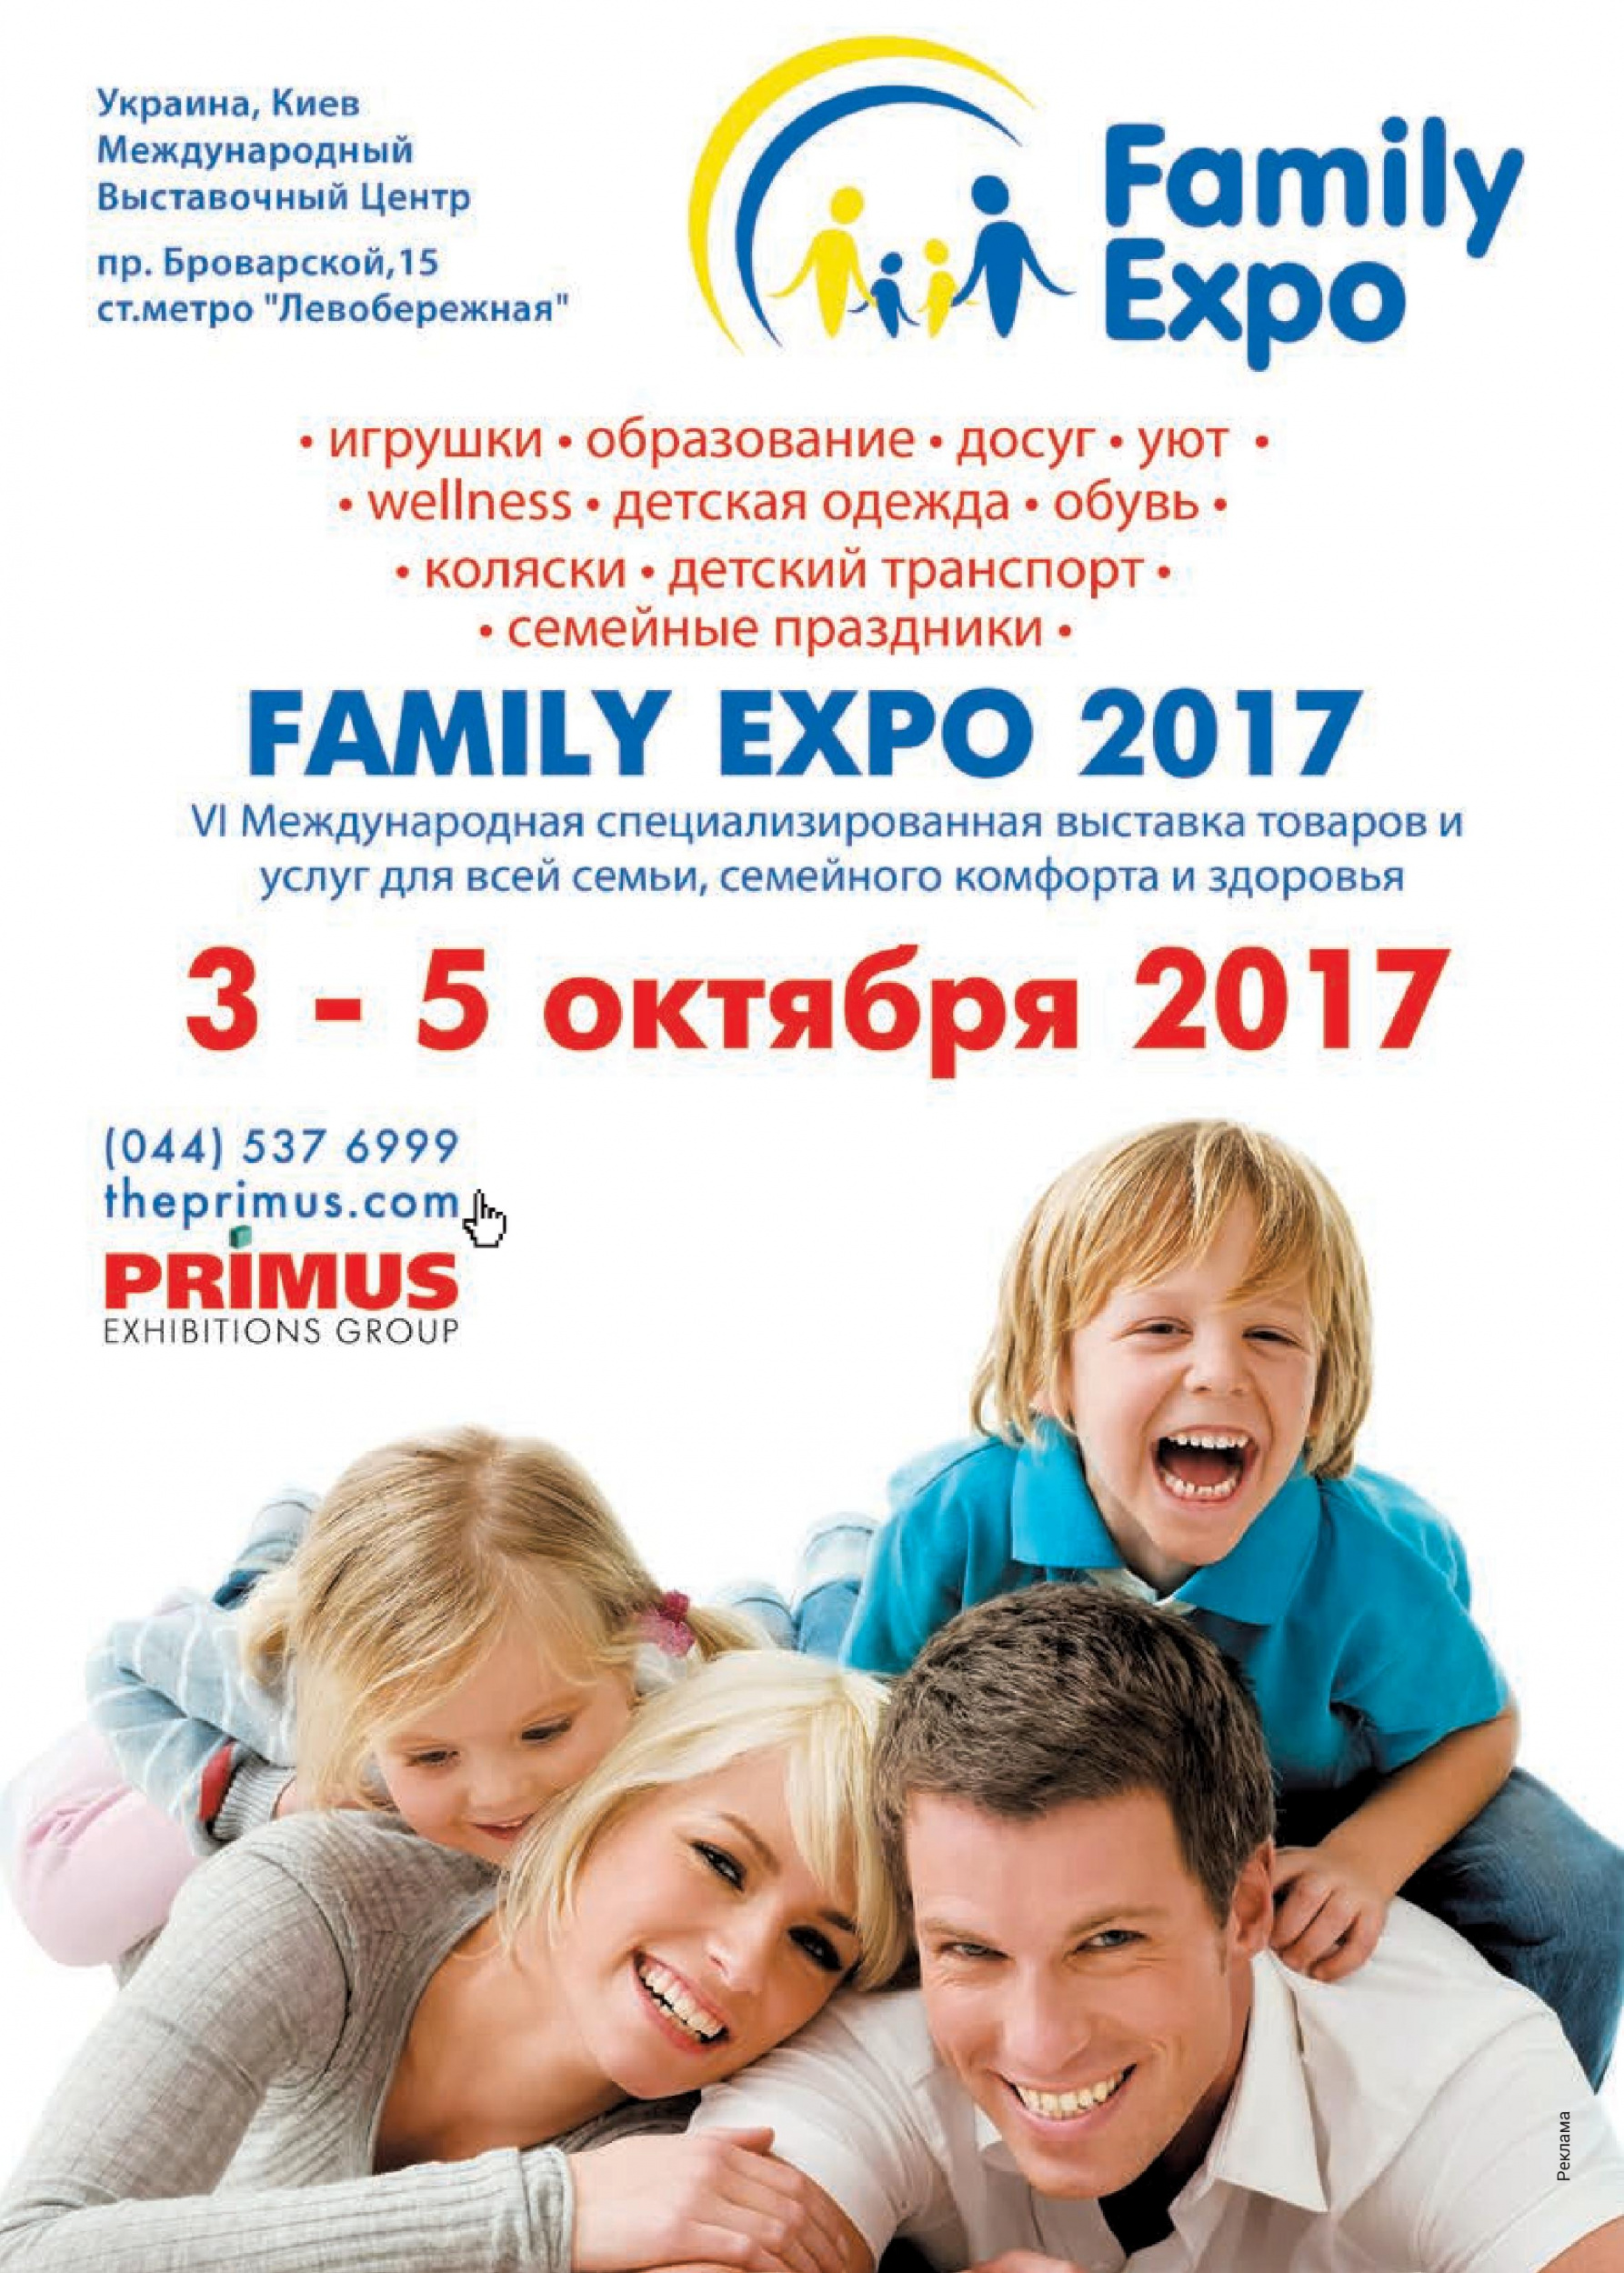 FAMILY EXPO 2017